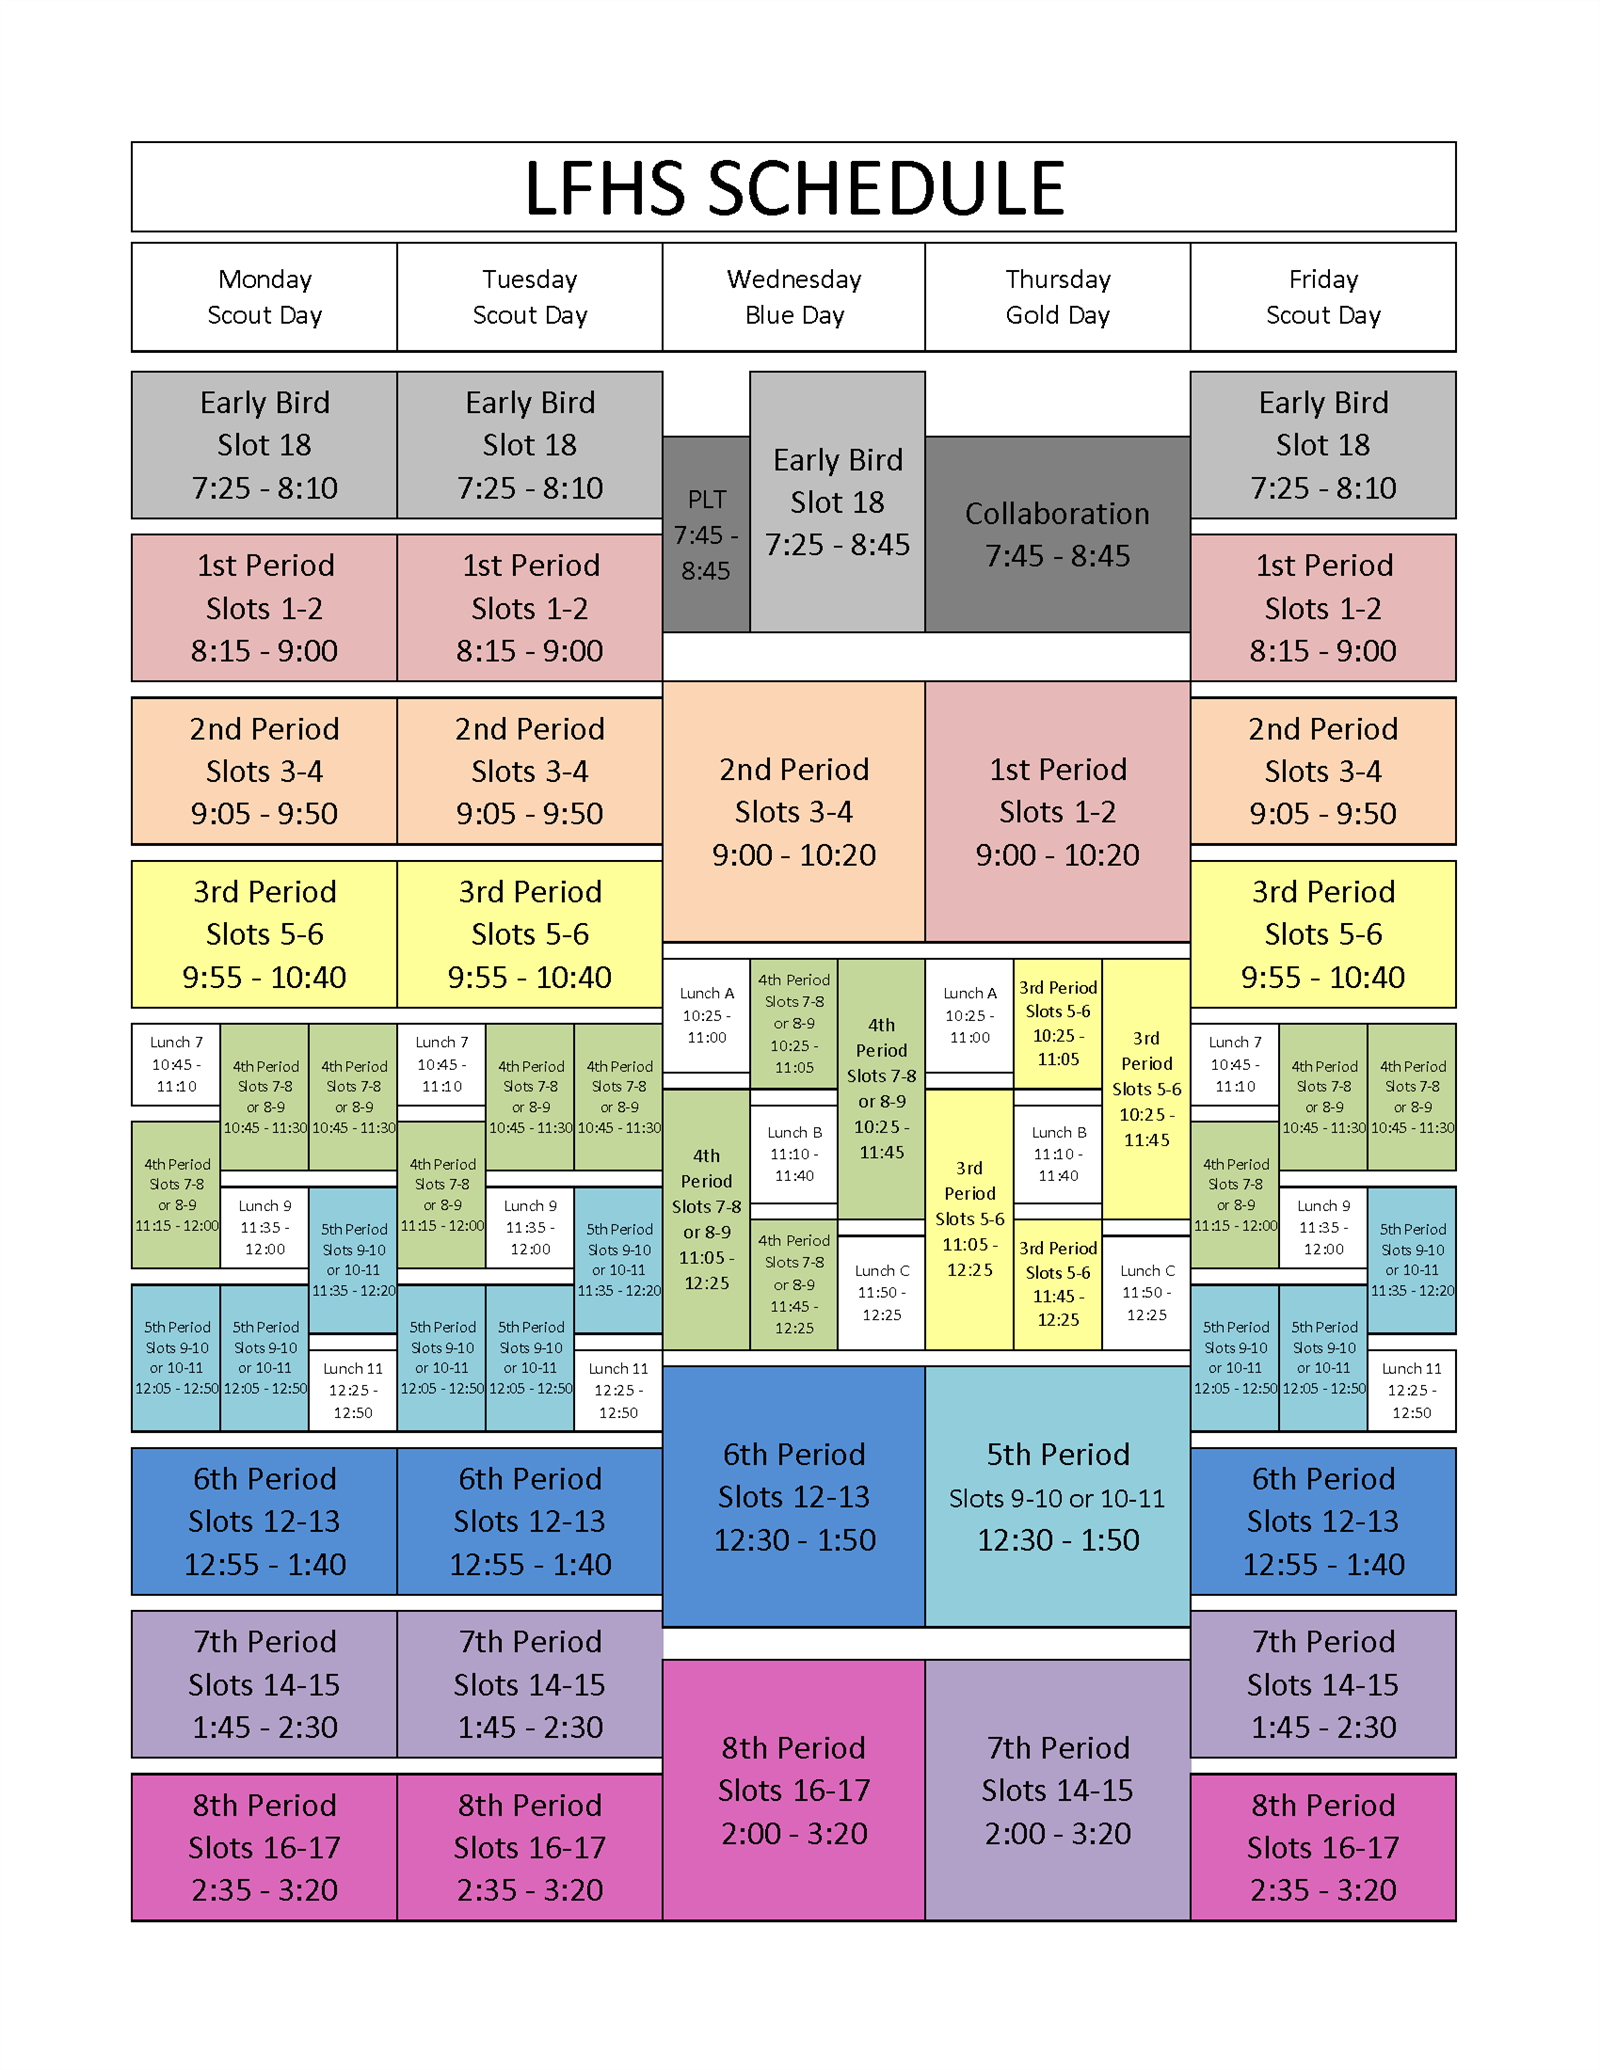 LFHS Schedule